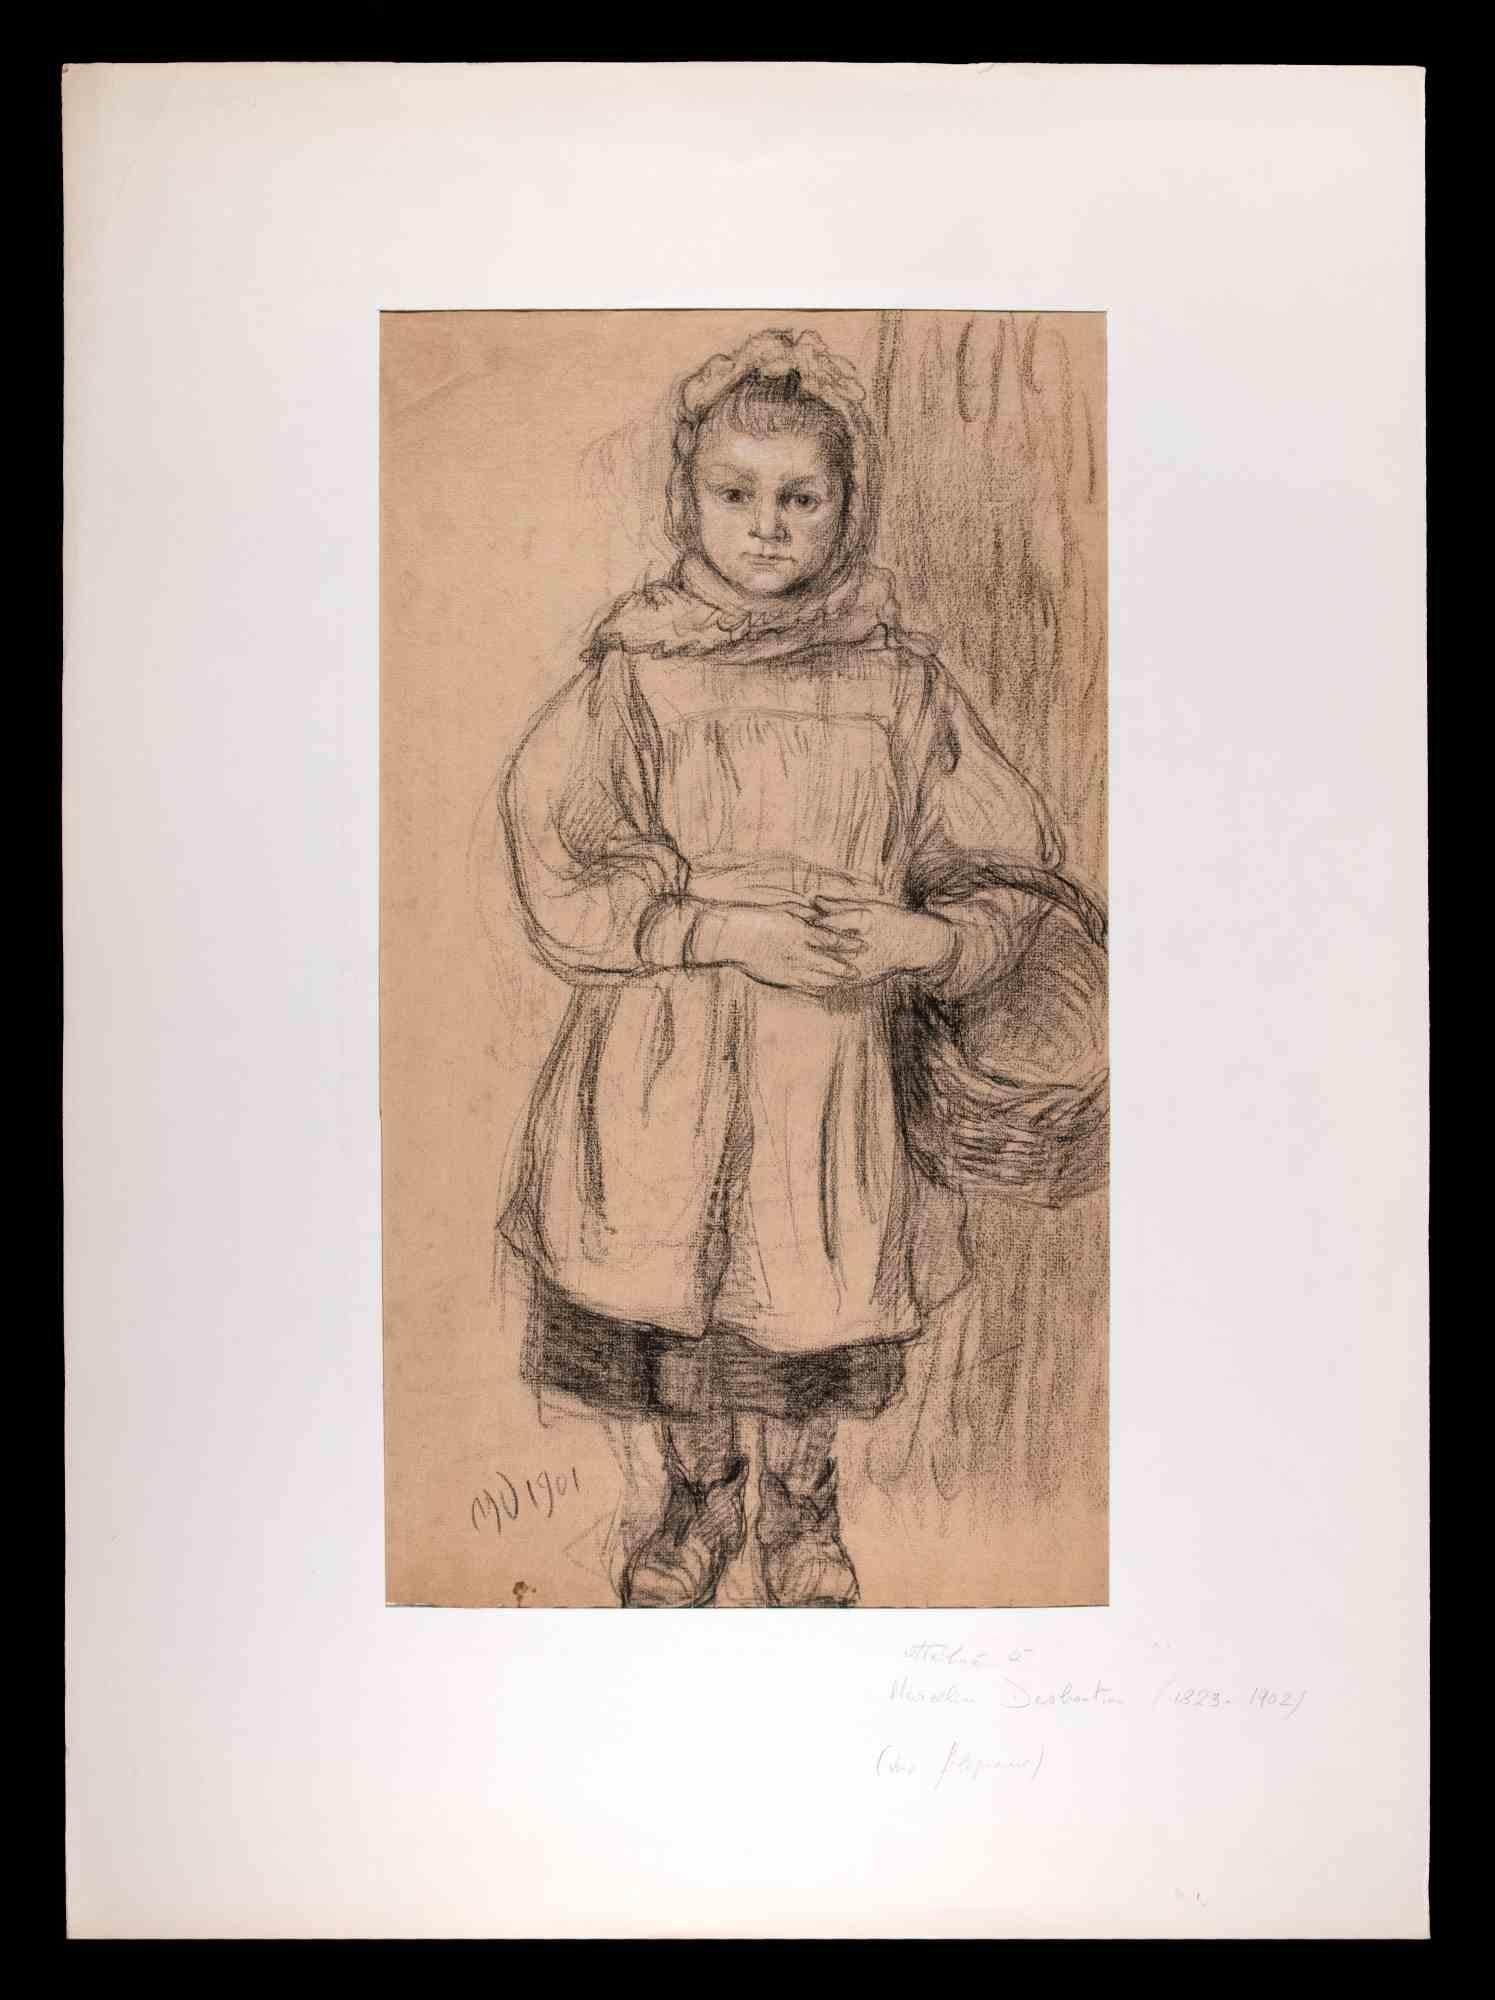 Das Porträt eines Kindes ist ein Originalkunstwerk, das Marcellin Desboutin zugeschrieben wird. Originalzeichnung, monogrammiert mit Bleistift am linken unteren Rand und datiert 1901.

Passpartout inklusive cm 70x52.

Gute Bedingungen. 

Marcellin